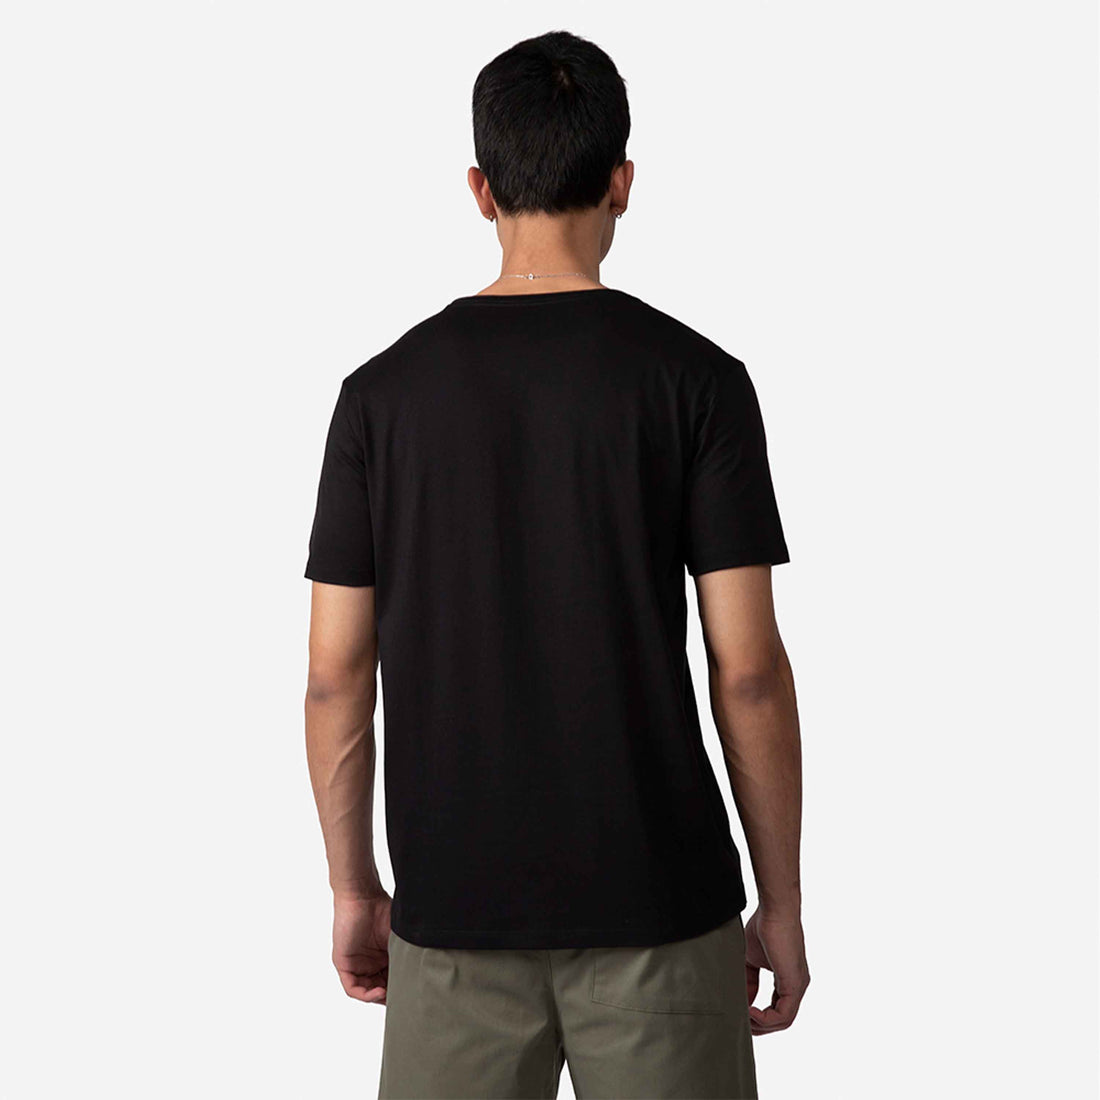 Camiseta Pima Masculina | Edição Limitada - Preto